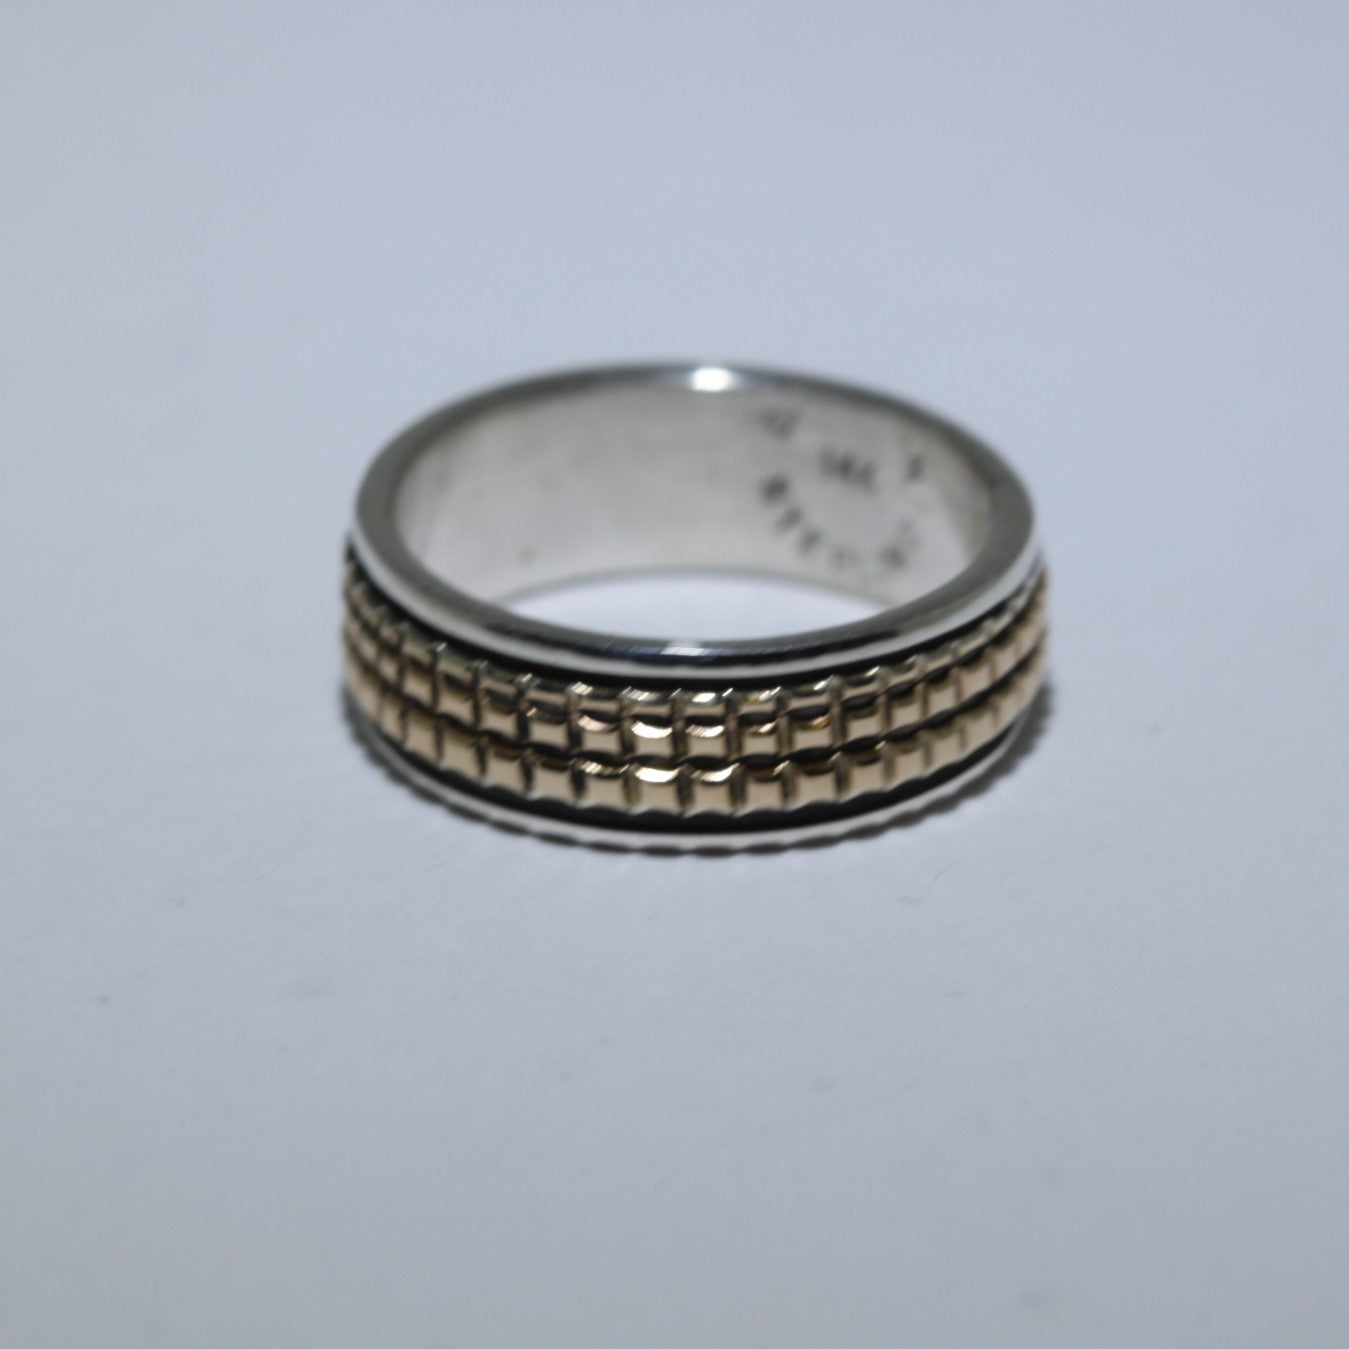 布鲁斯·摩根的14K金和银戒指